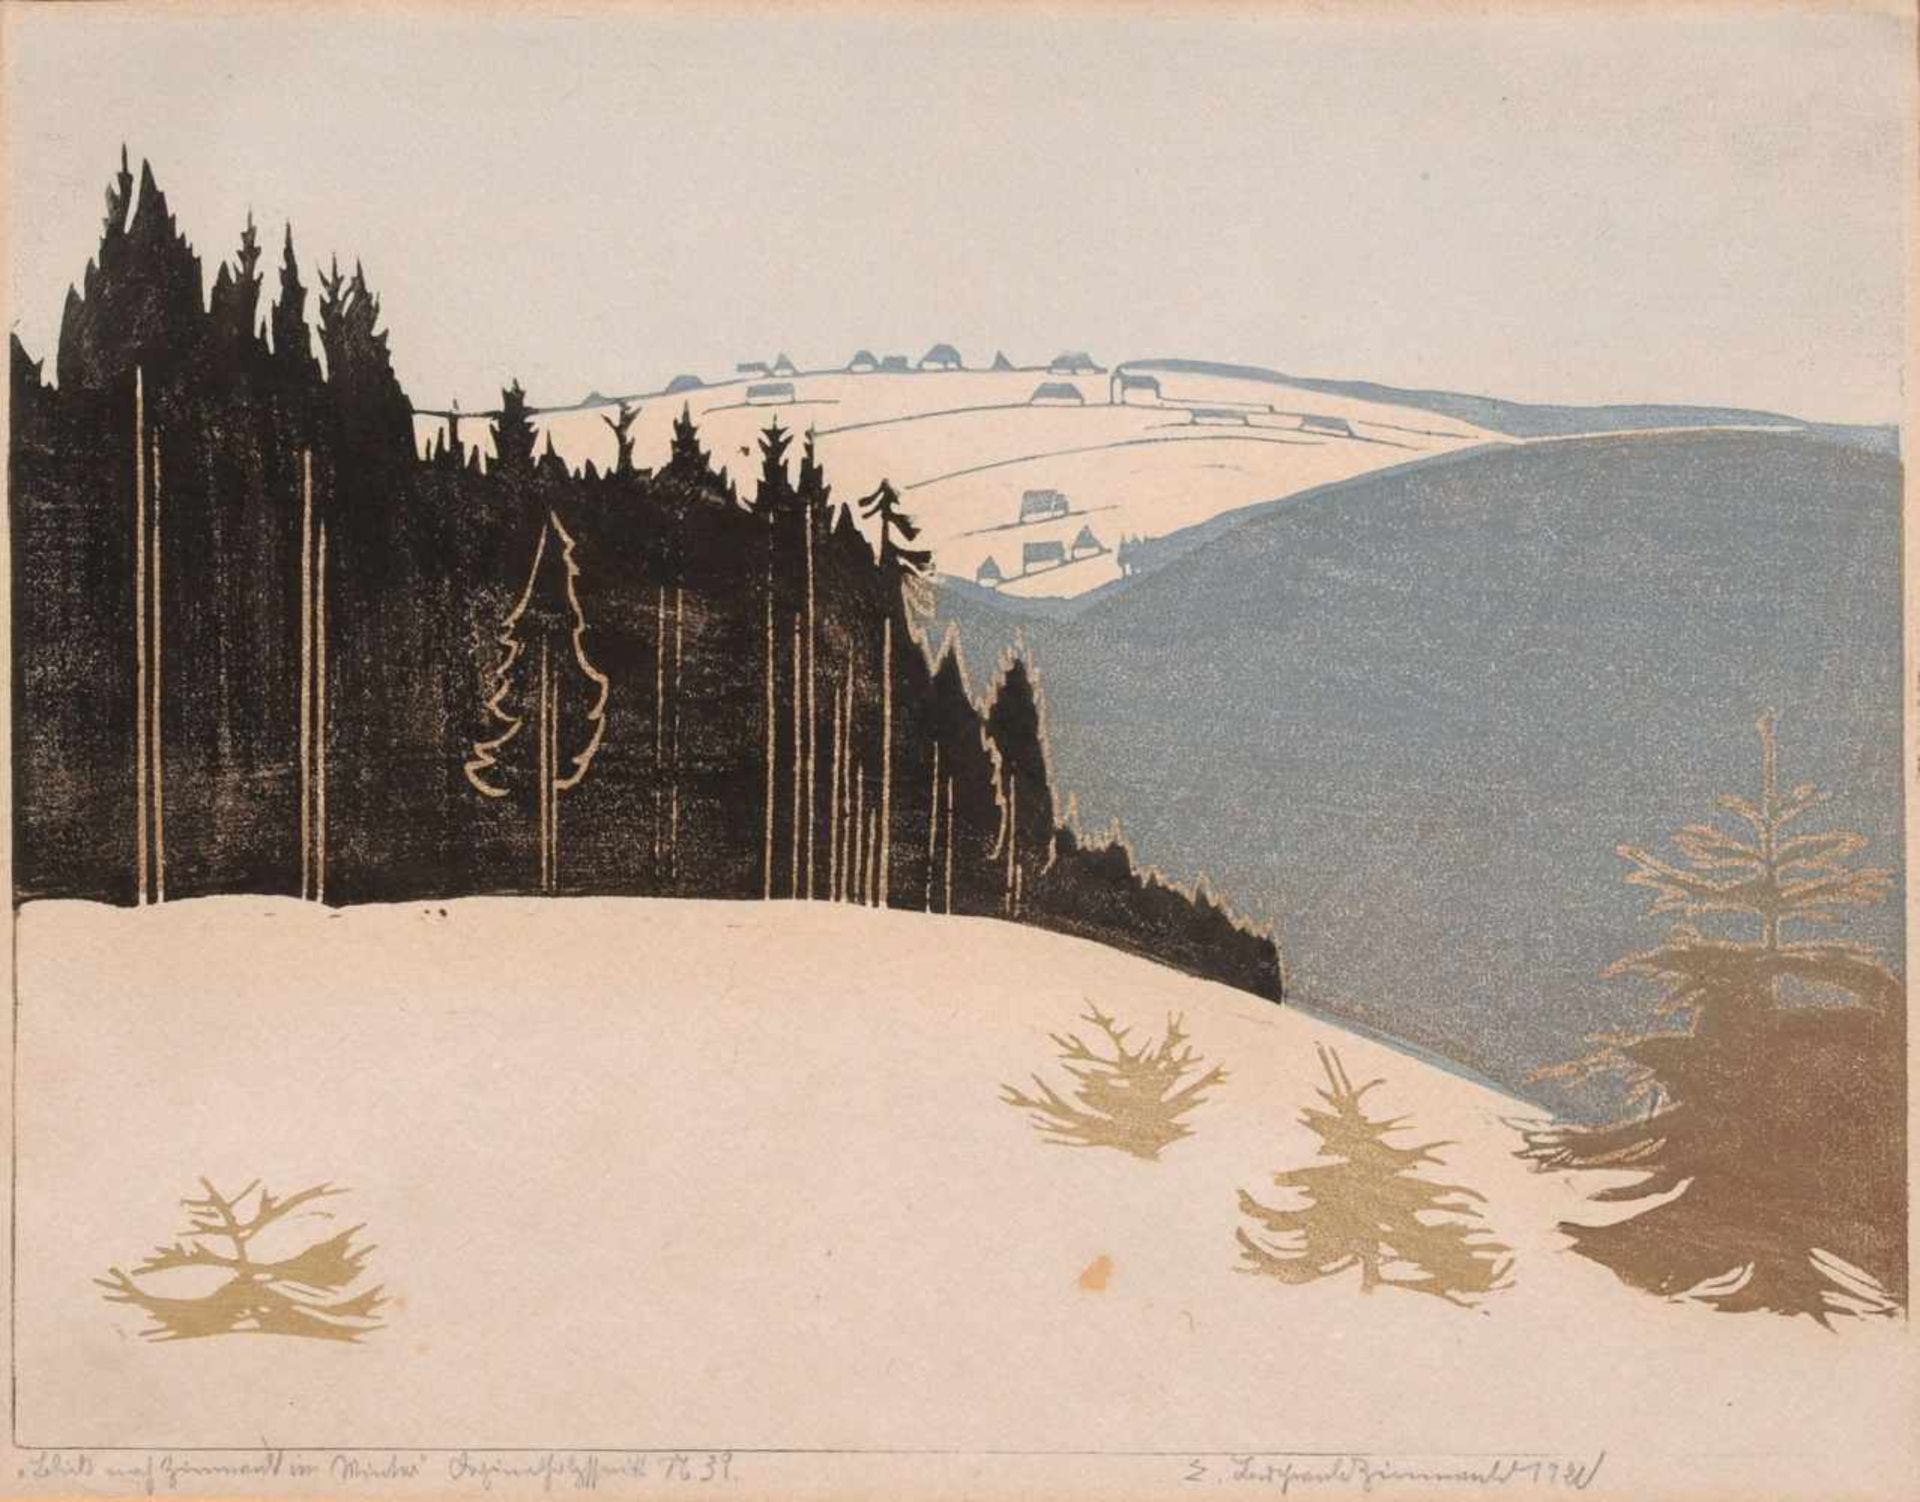 Erich Buchwald-Zinnwald "Blick auf Zinnwald im Winter". 1921.Erich Buchwald-Zinnwald 1884